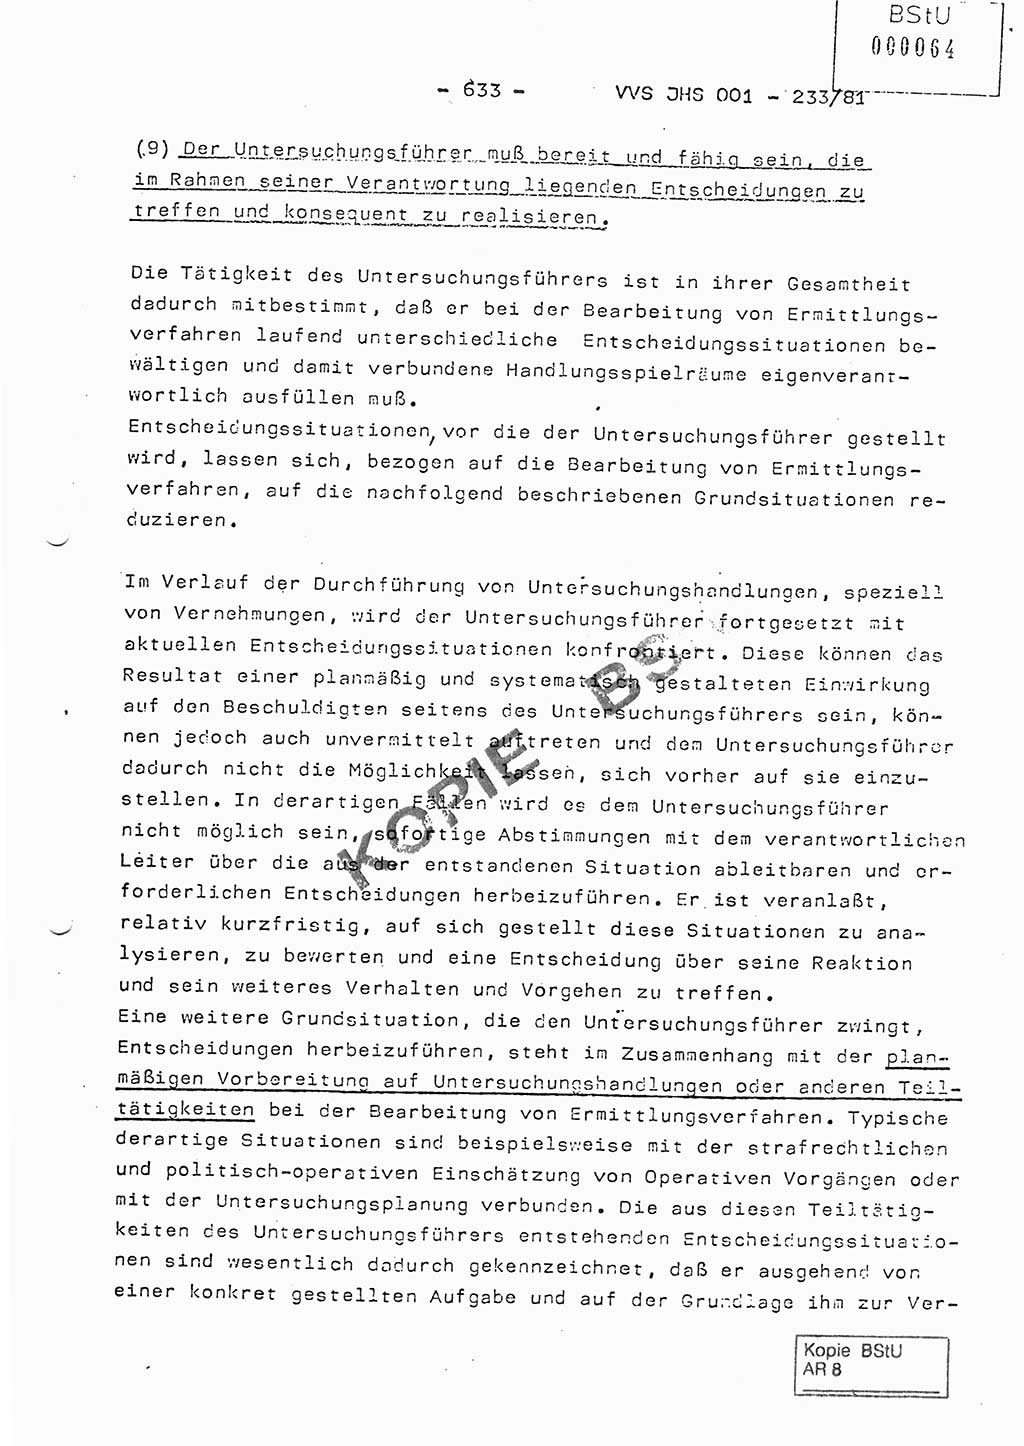 Dissertation Oberstleutnant Horst Zank (JHS), Oberstleutnant Dr. Karl-Heinz Knoblauch (JHS), Oberstleutnant Gustav-Adolf Kowalewski (HA Ⅸ), Oberstleutnant Wolfgang Plötner (HA Ⅸ), Ministerium für Staatssicherheit (MfS) [Deutsche Demokratische Republik (DDR)], Juristische Hochschule (JHS), Vertrauliche Verschlußsache (VVS) o001-233/81, Potsdam 1981, Blatt 633 (Diss. MfS DDR JHS VVS o001-233/81 1981, Bl. 633)